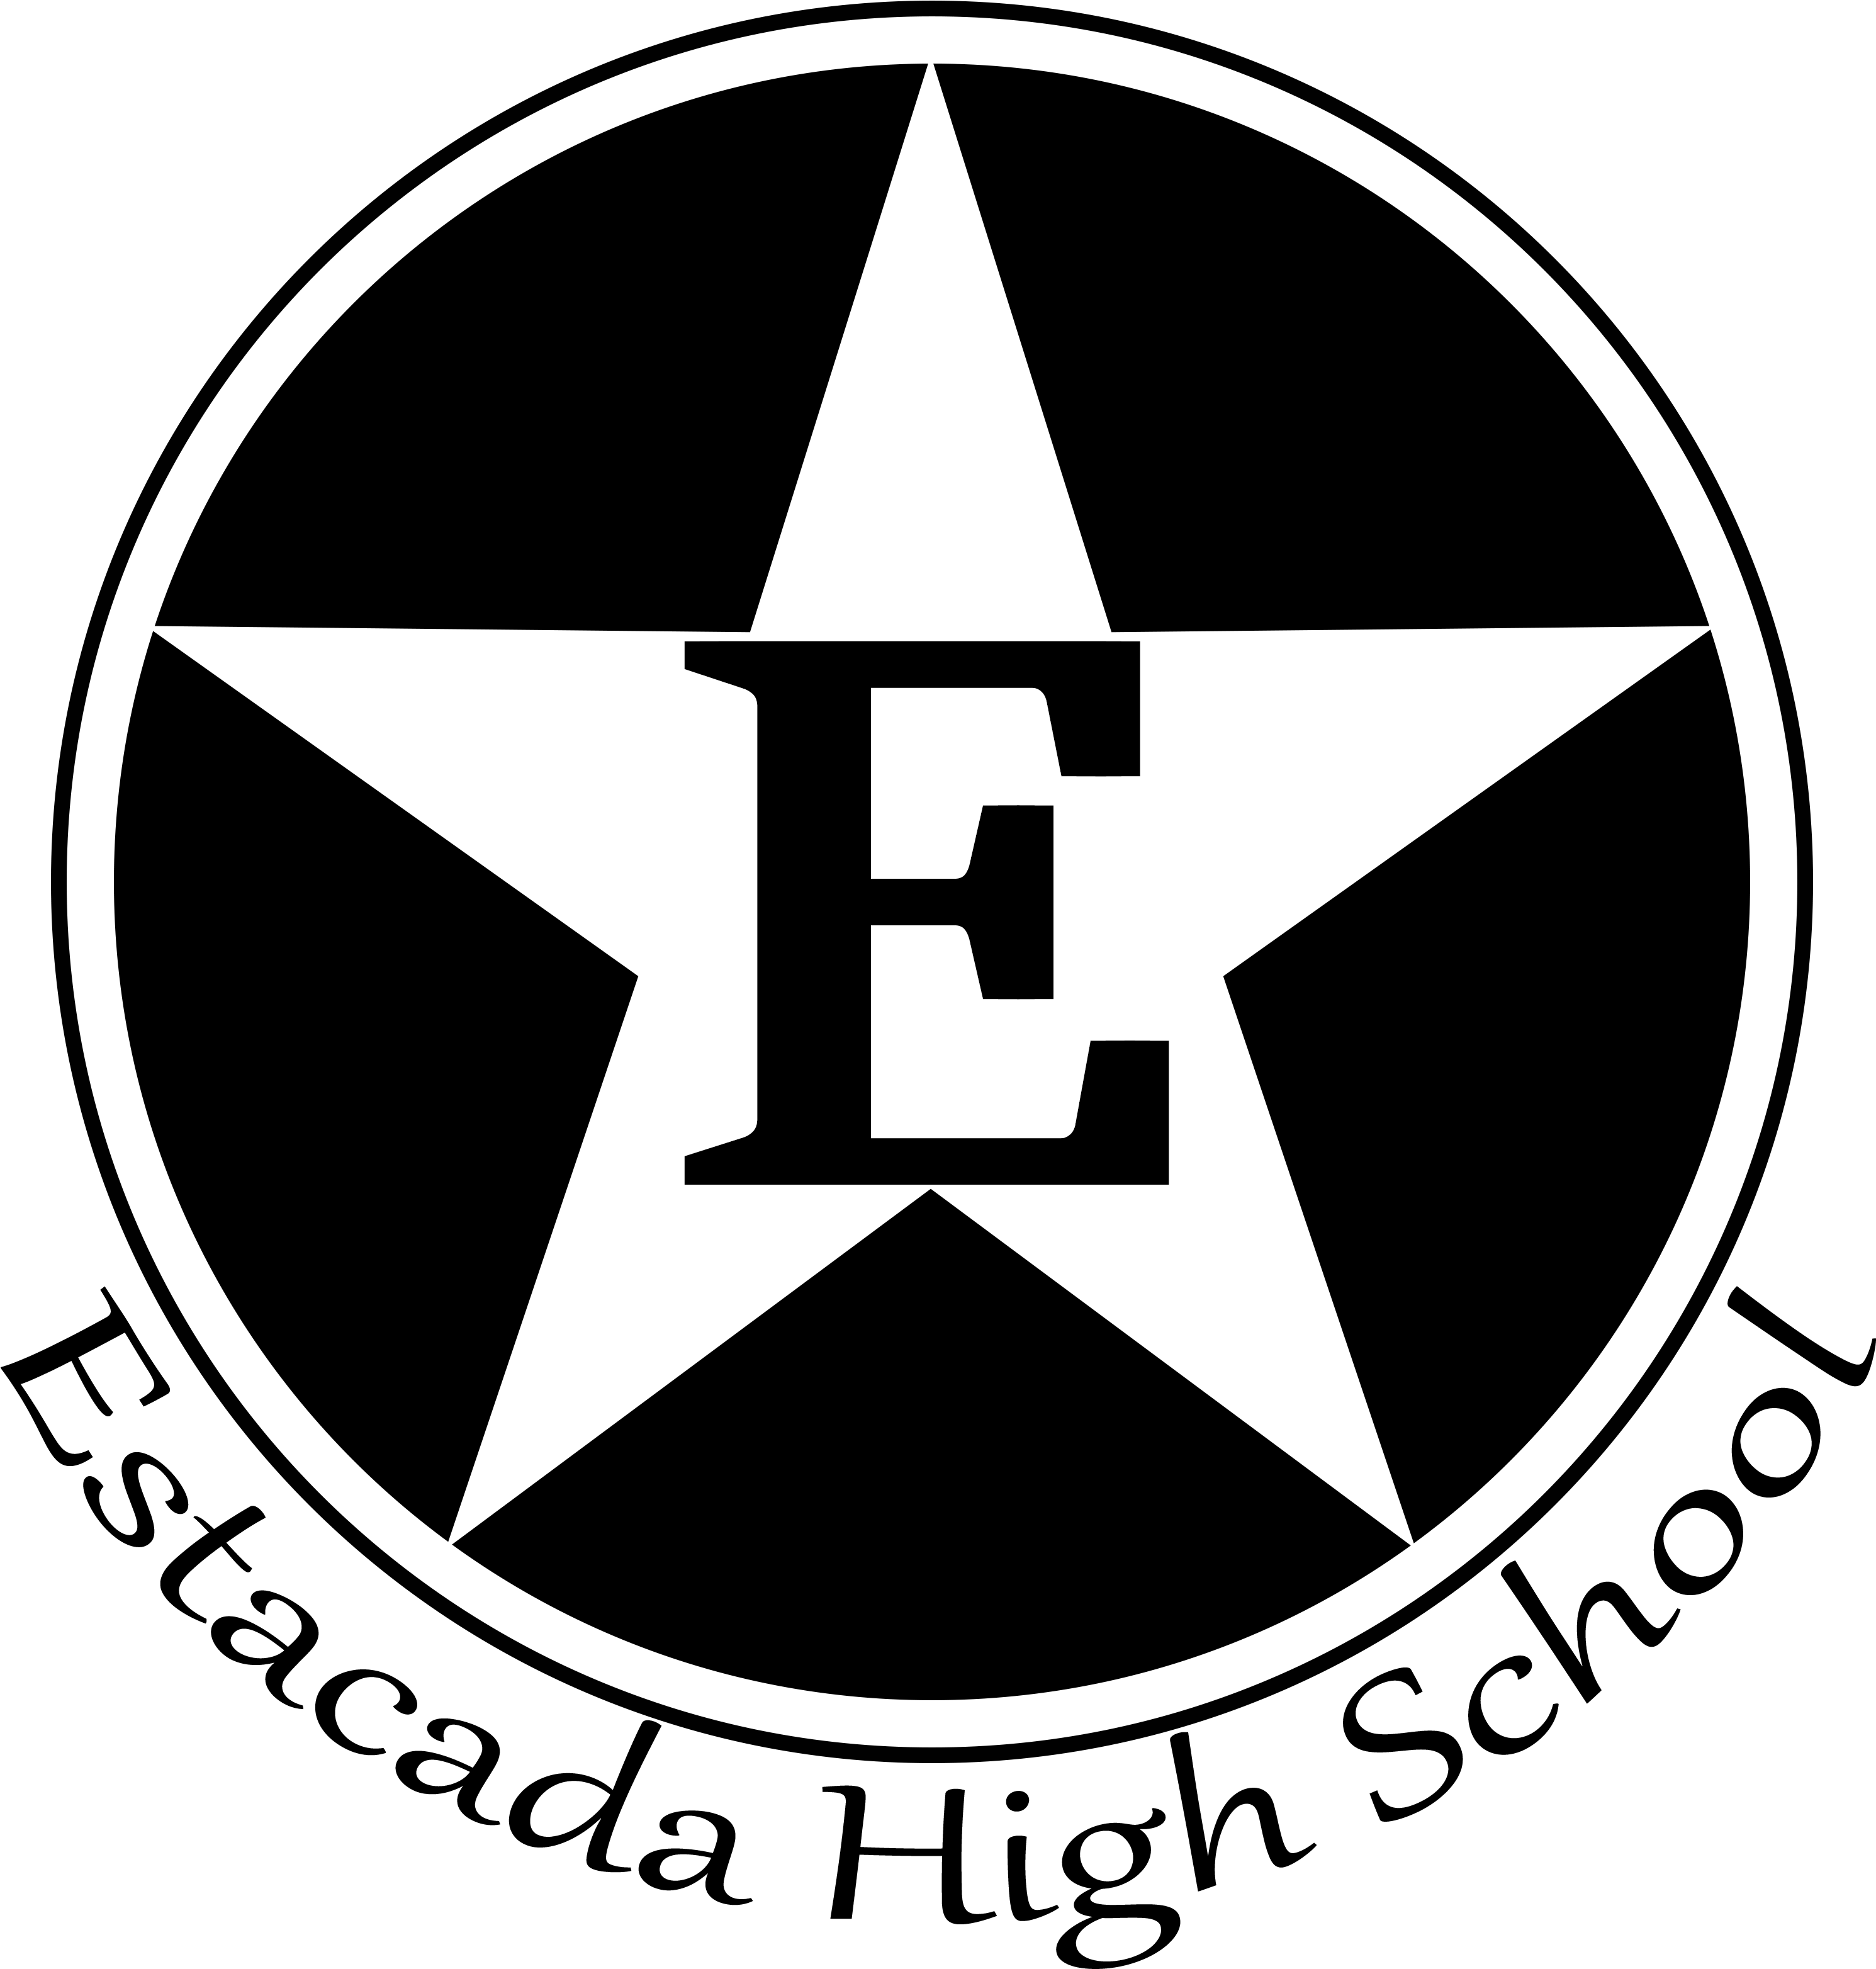 Ehs Logo - Red Circle With White Star Logo (3612x3492)